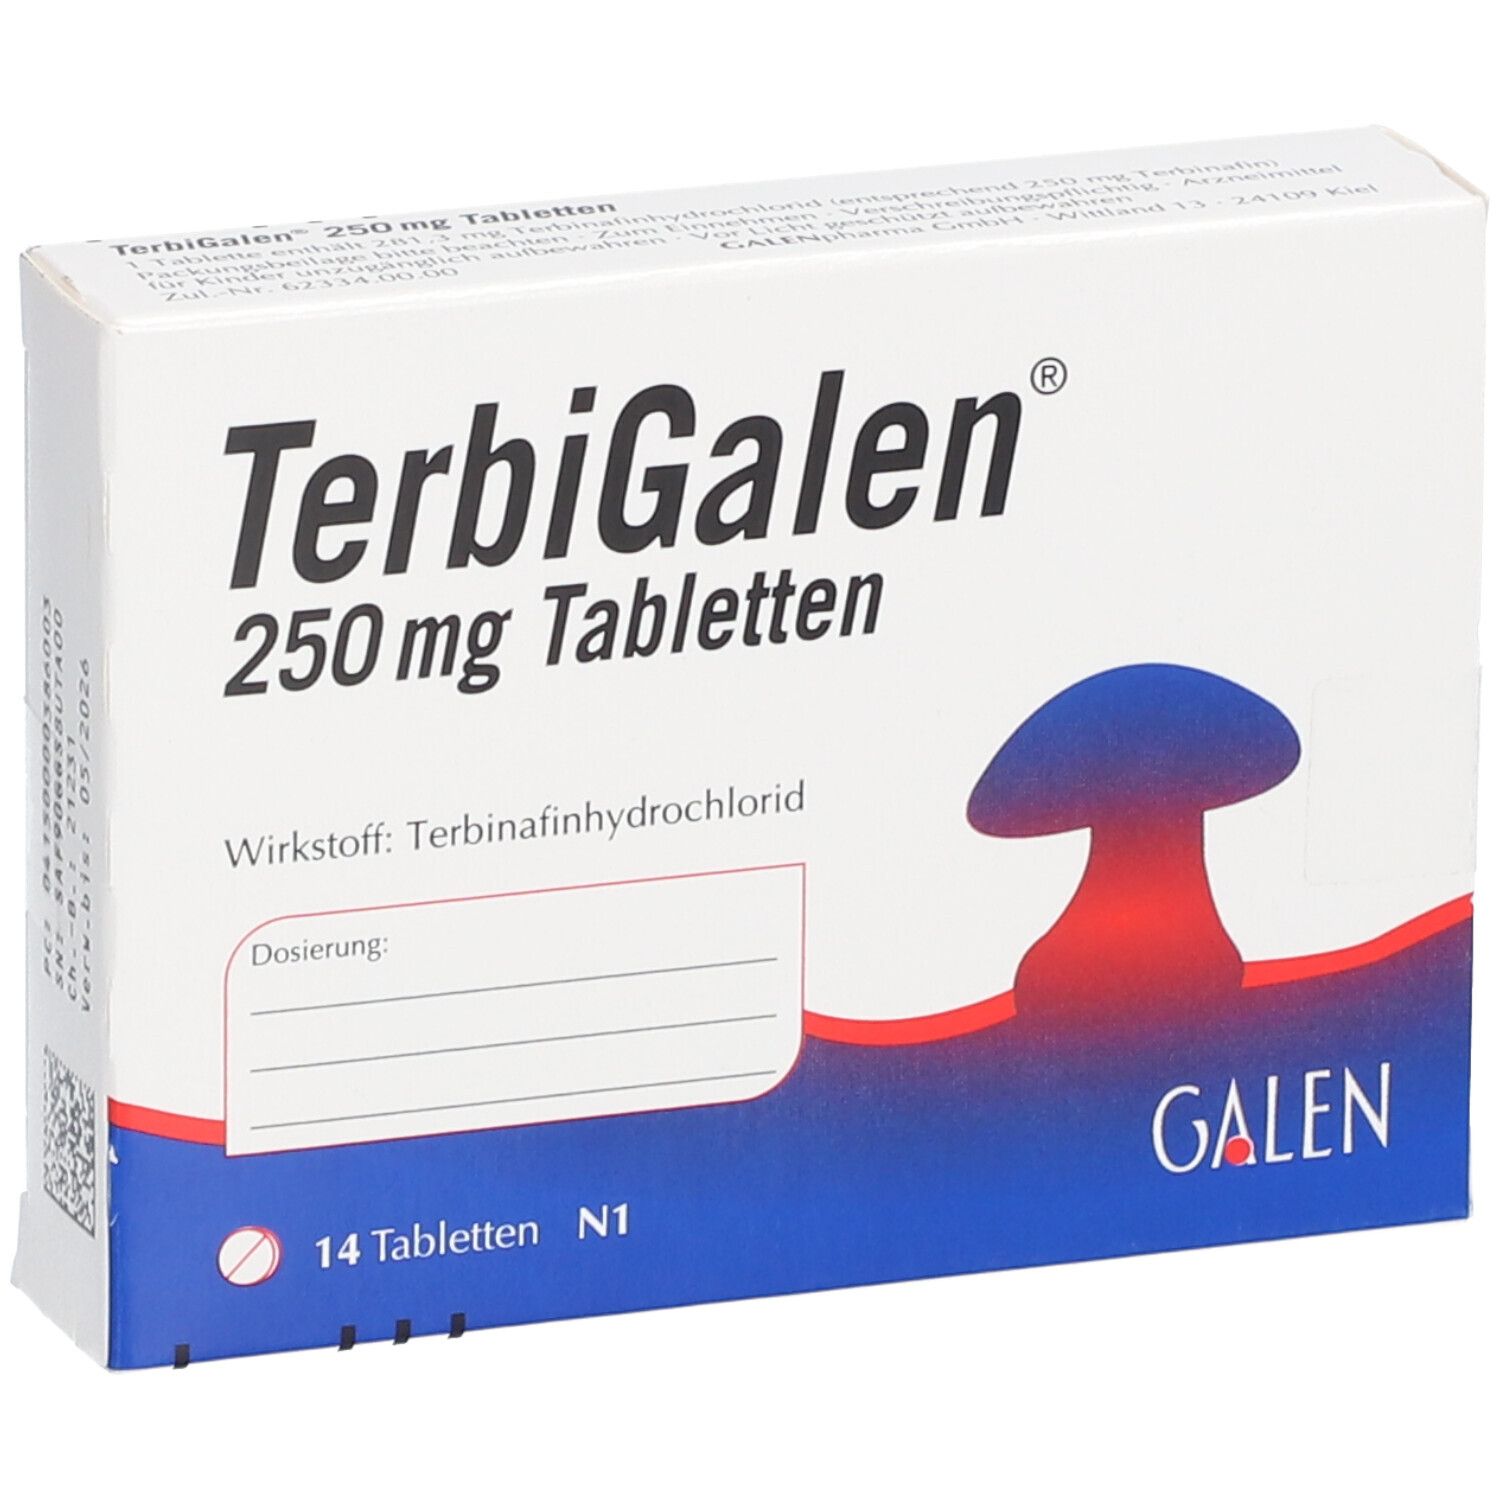 TerbiGalen® 250mg